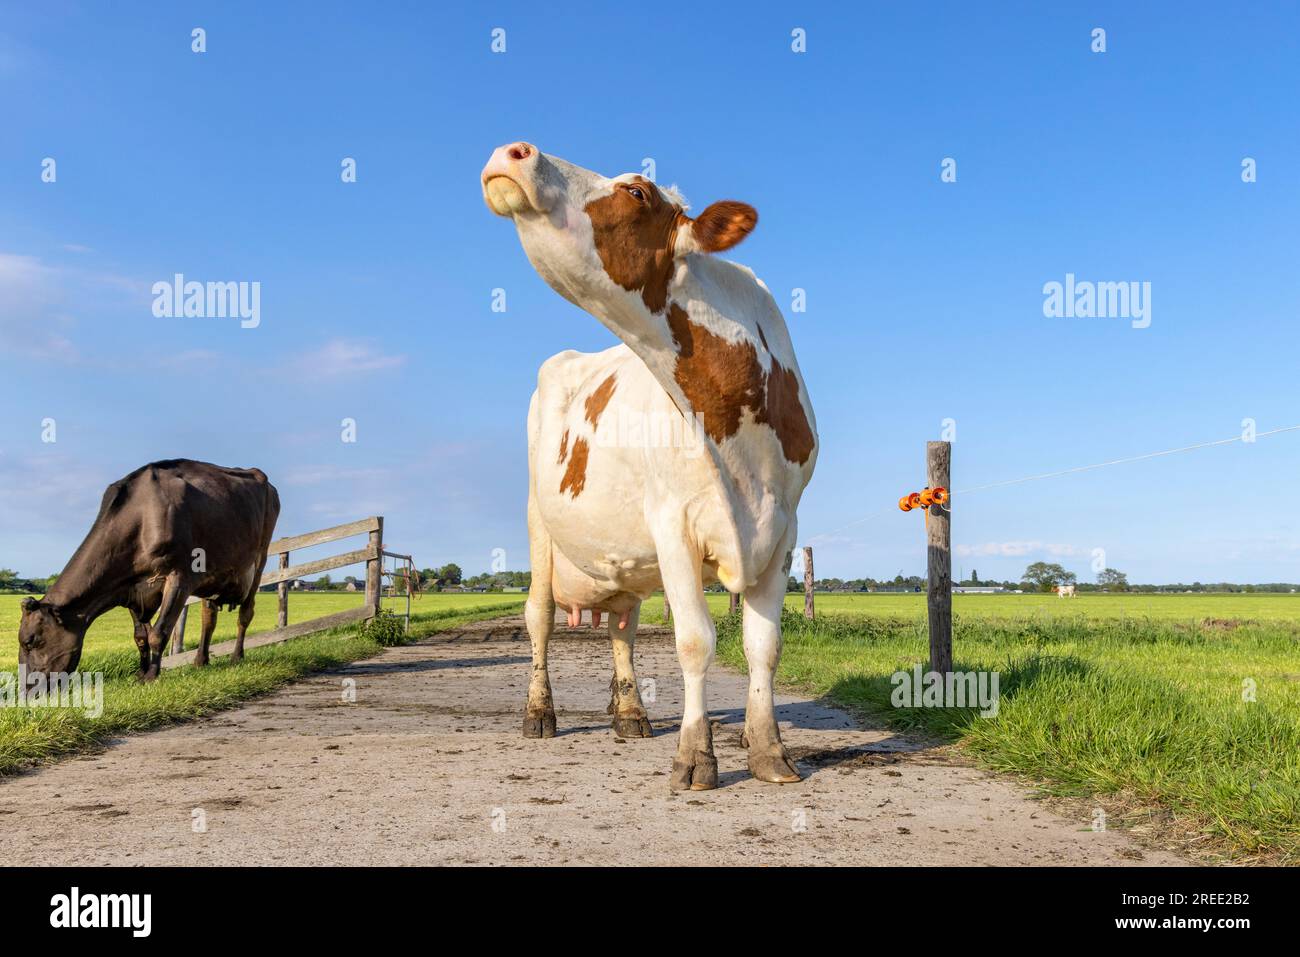 La vache laitière renifle la tête levée, les bovins laitiers rouges et blancs sur un chemin dans un champ, ciel bleu Banque D'Images